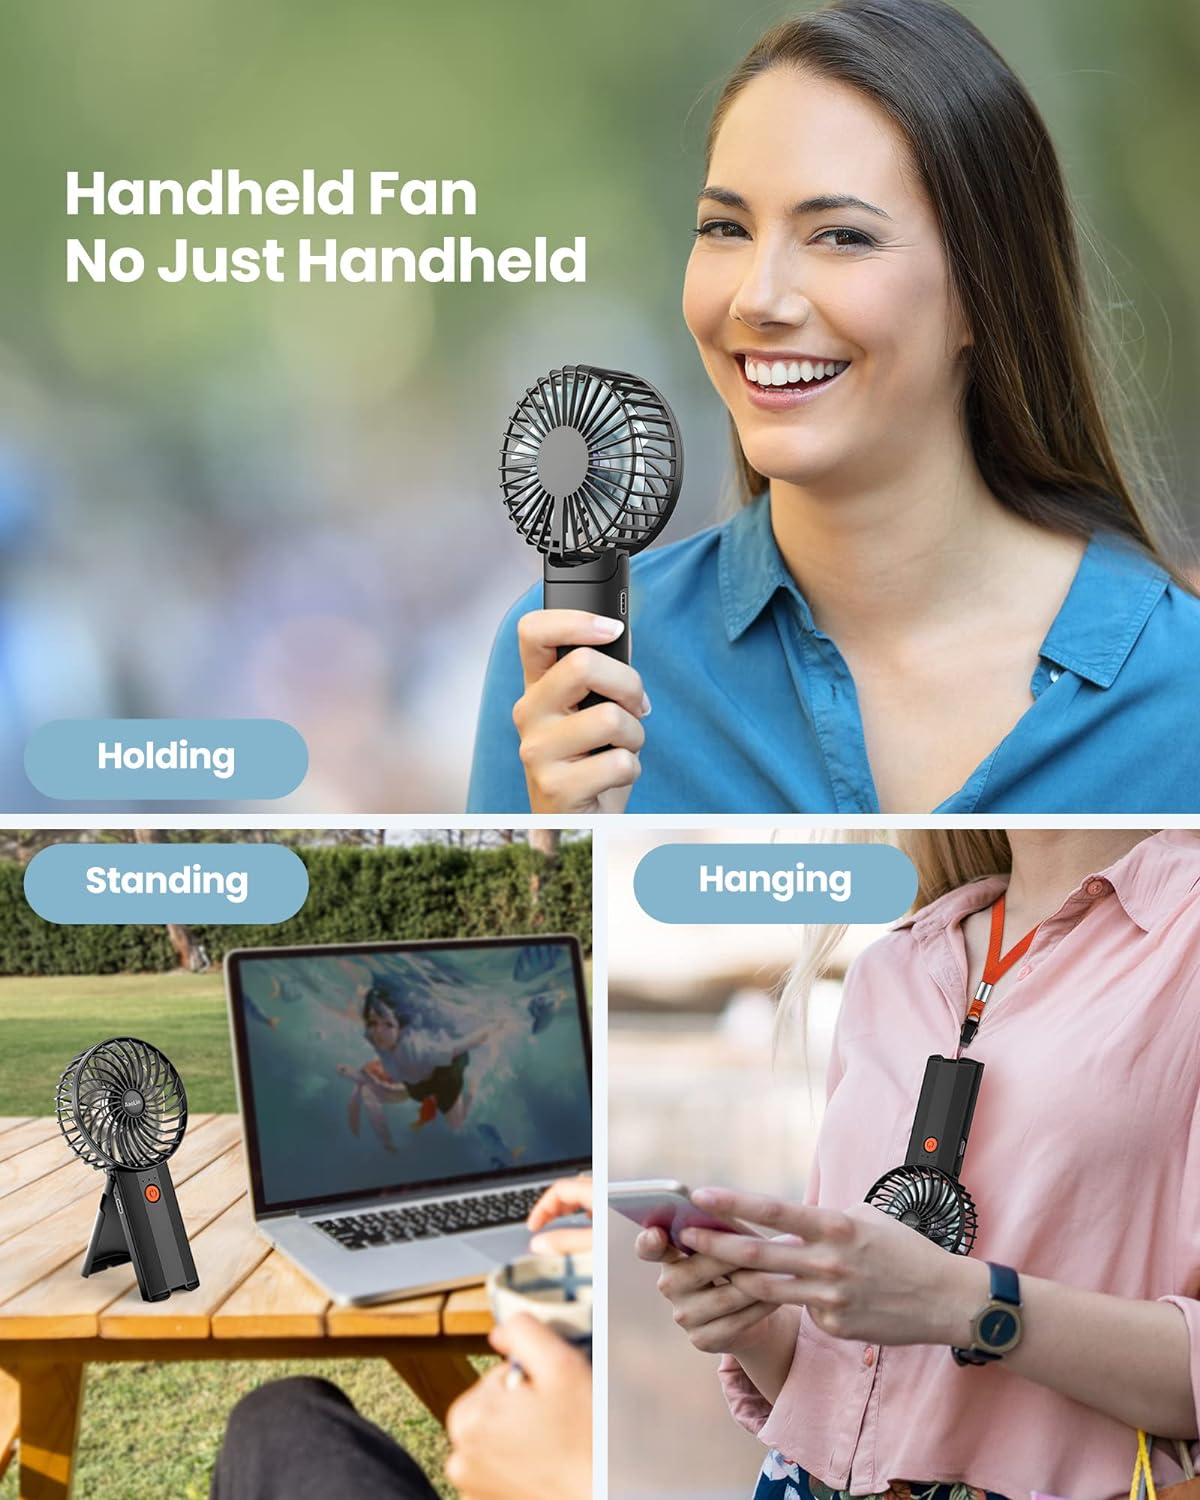 AaoLin Handheld Fan [6-15H Working Time] Foldable Hand Held Fan USB Rechargeable, 4 Speeds Portable Personal Mini Fan, Battery Operated Desk Fan for Stylish Girl Women Travel/Commute/Makeup/Office